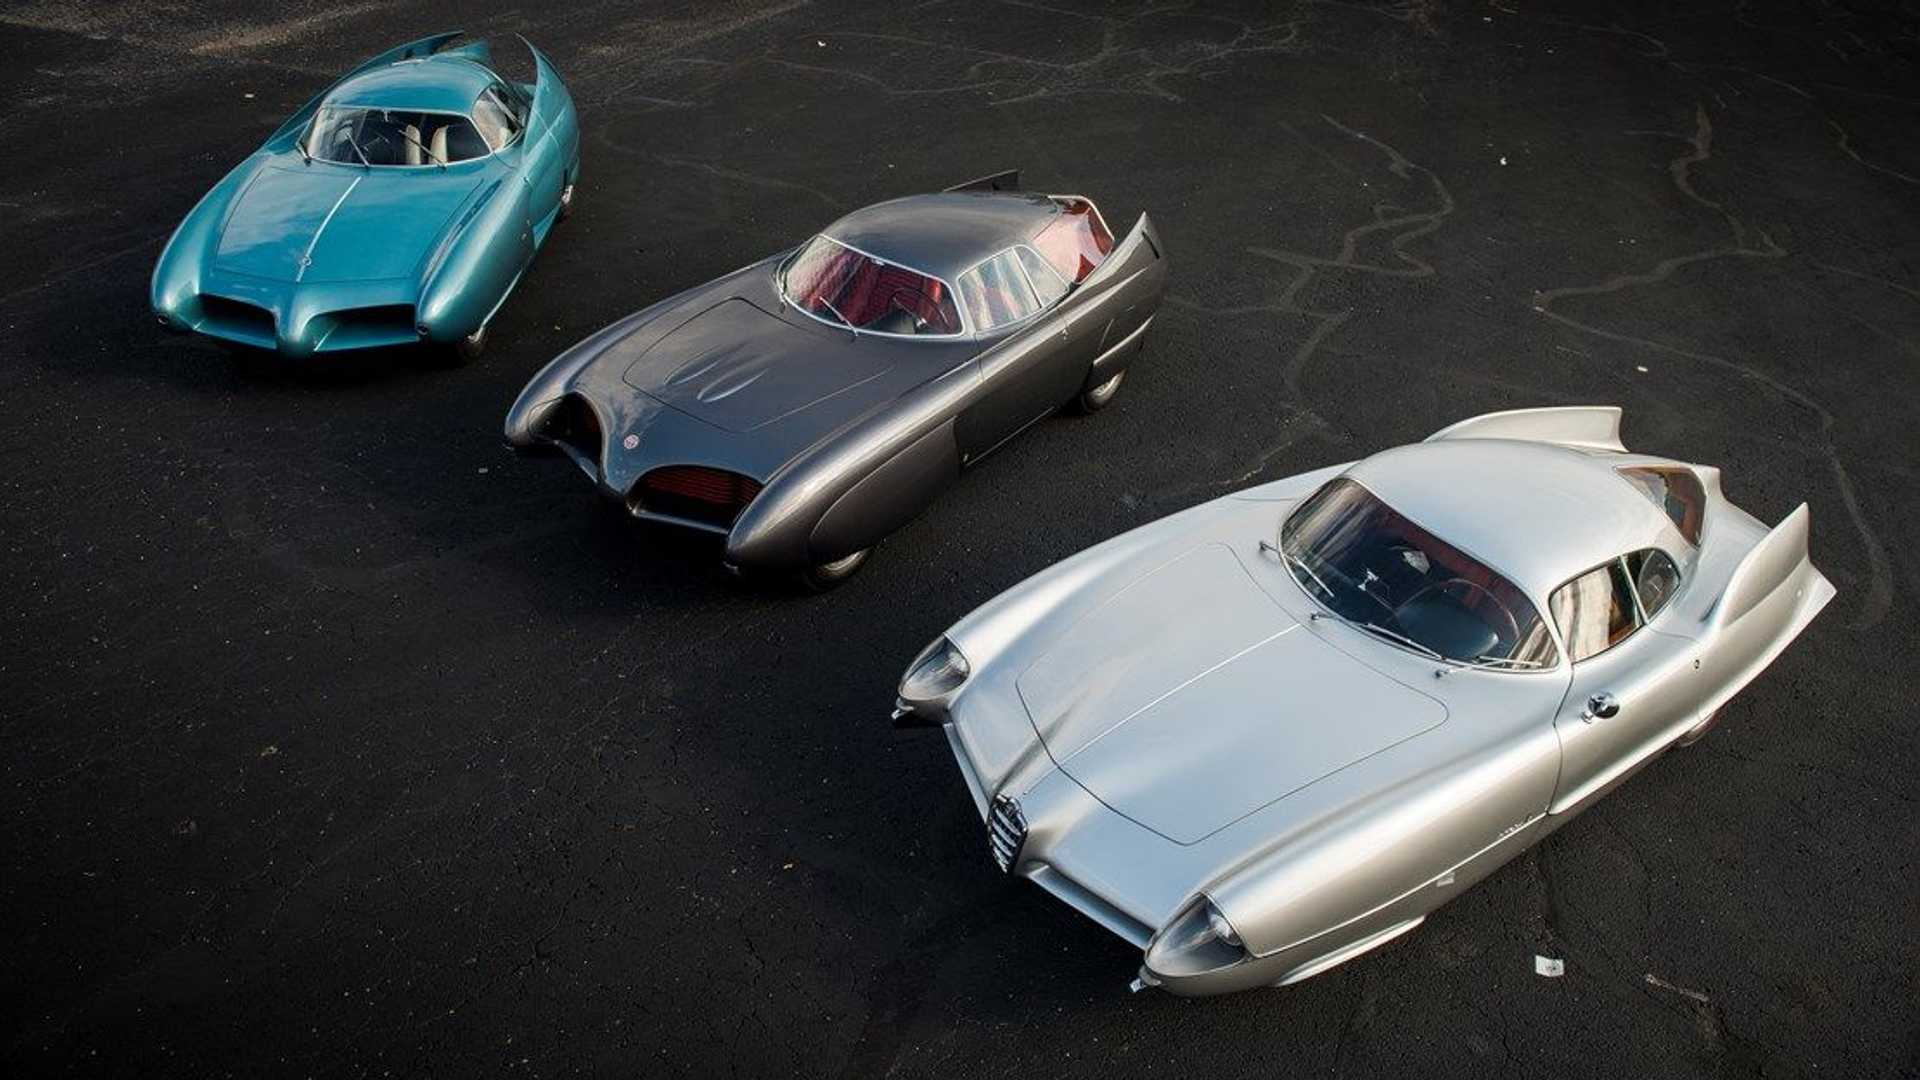 نمای بالا از سه خودروی مفهومی آلفا رومئو / Alfa Romeo B.A.T. Concept Car با رنگ های آبی و سفید و خاکستری